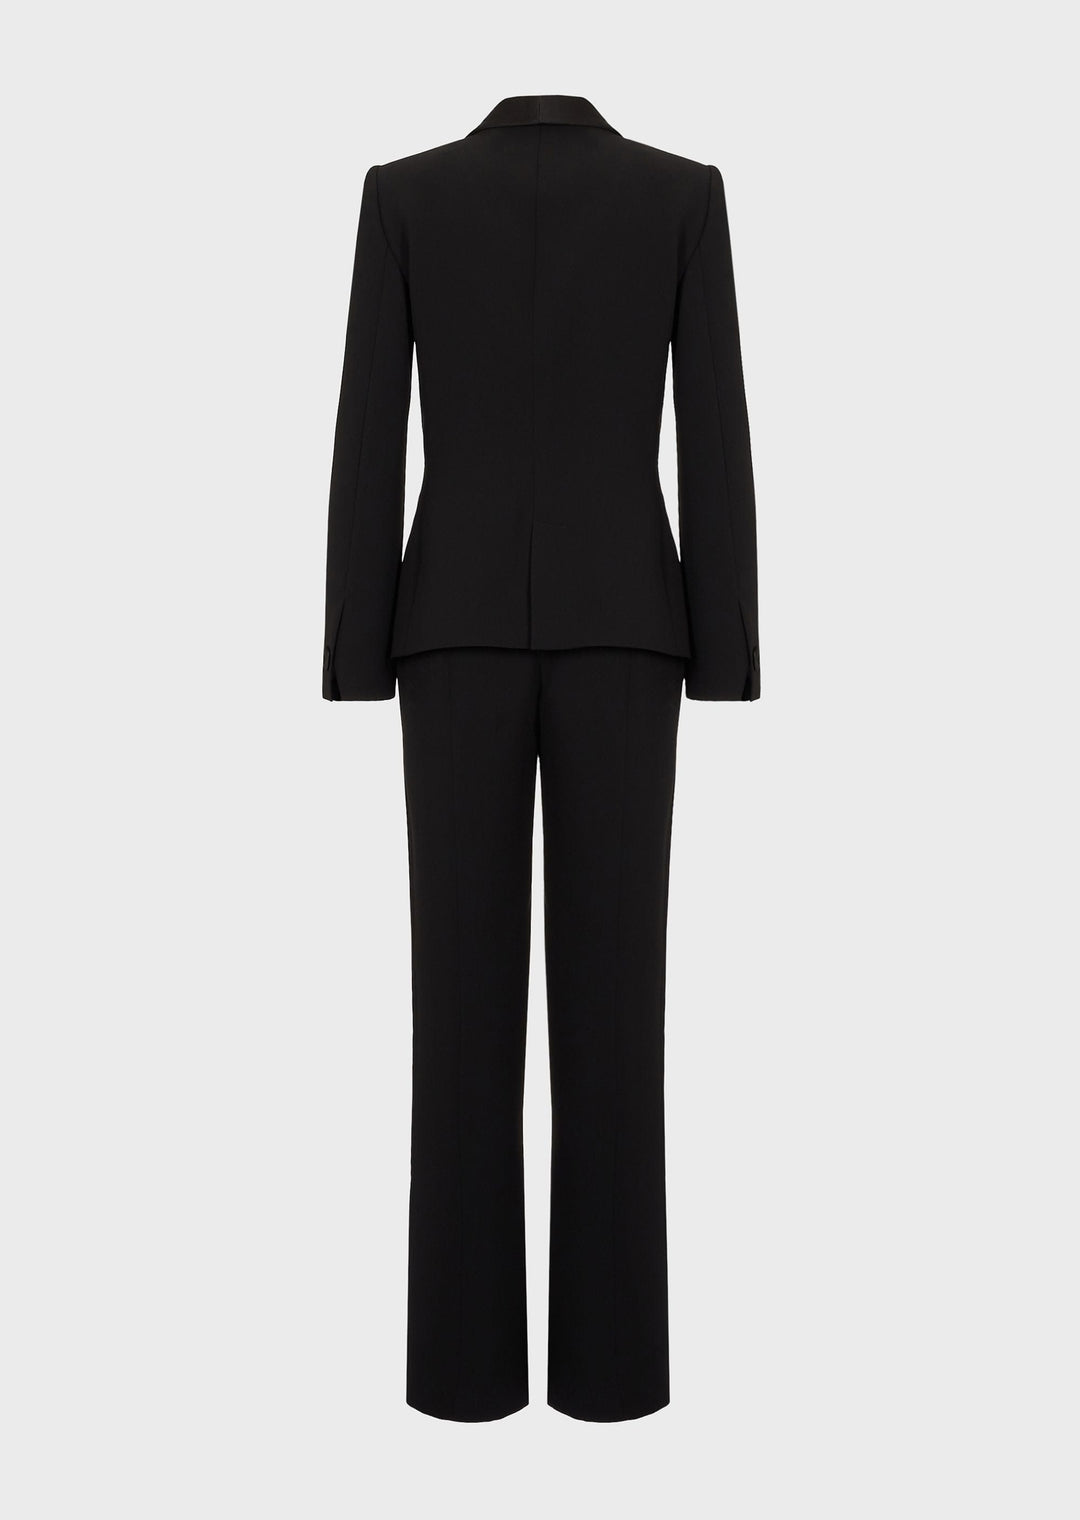 solovedress 2 Piece Business Casual Shawl Lapel Women's Suit (Blazer+Pants)